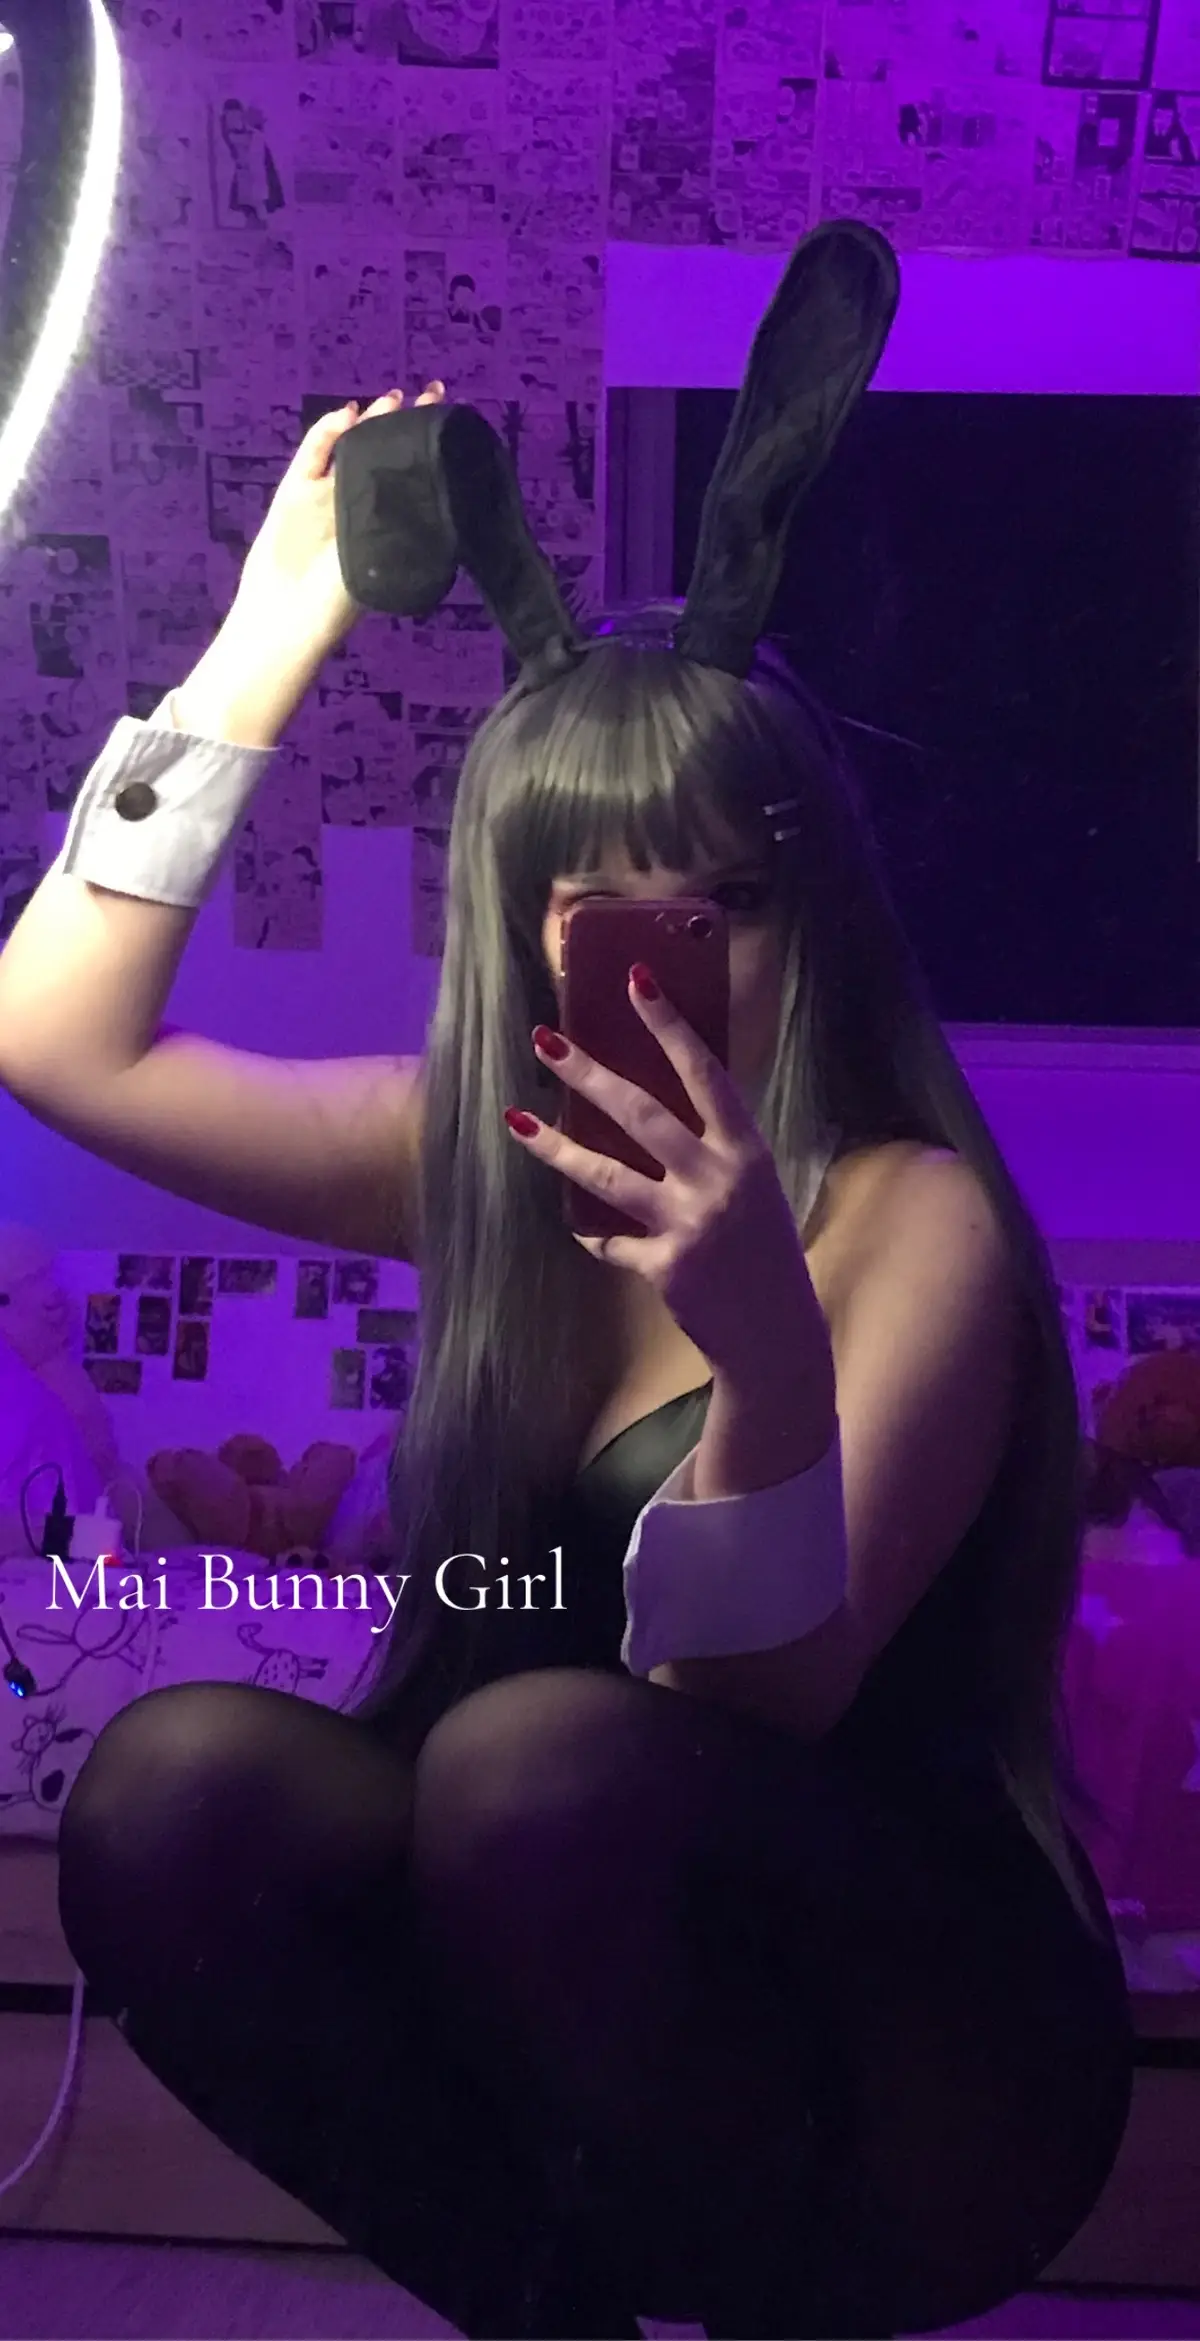 YOUR FAV BUNNY GIRL 🐰🐰#bunnygirlsenpai #bunnygirlcosplay #bunnysuit 